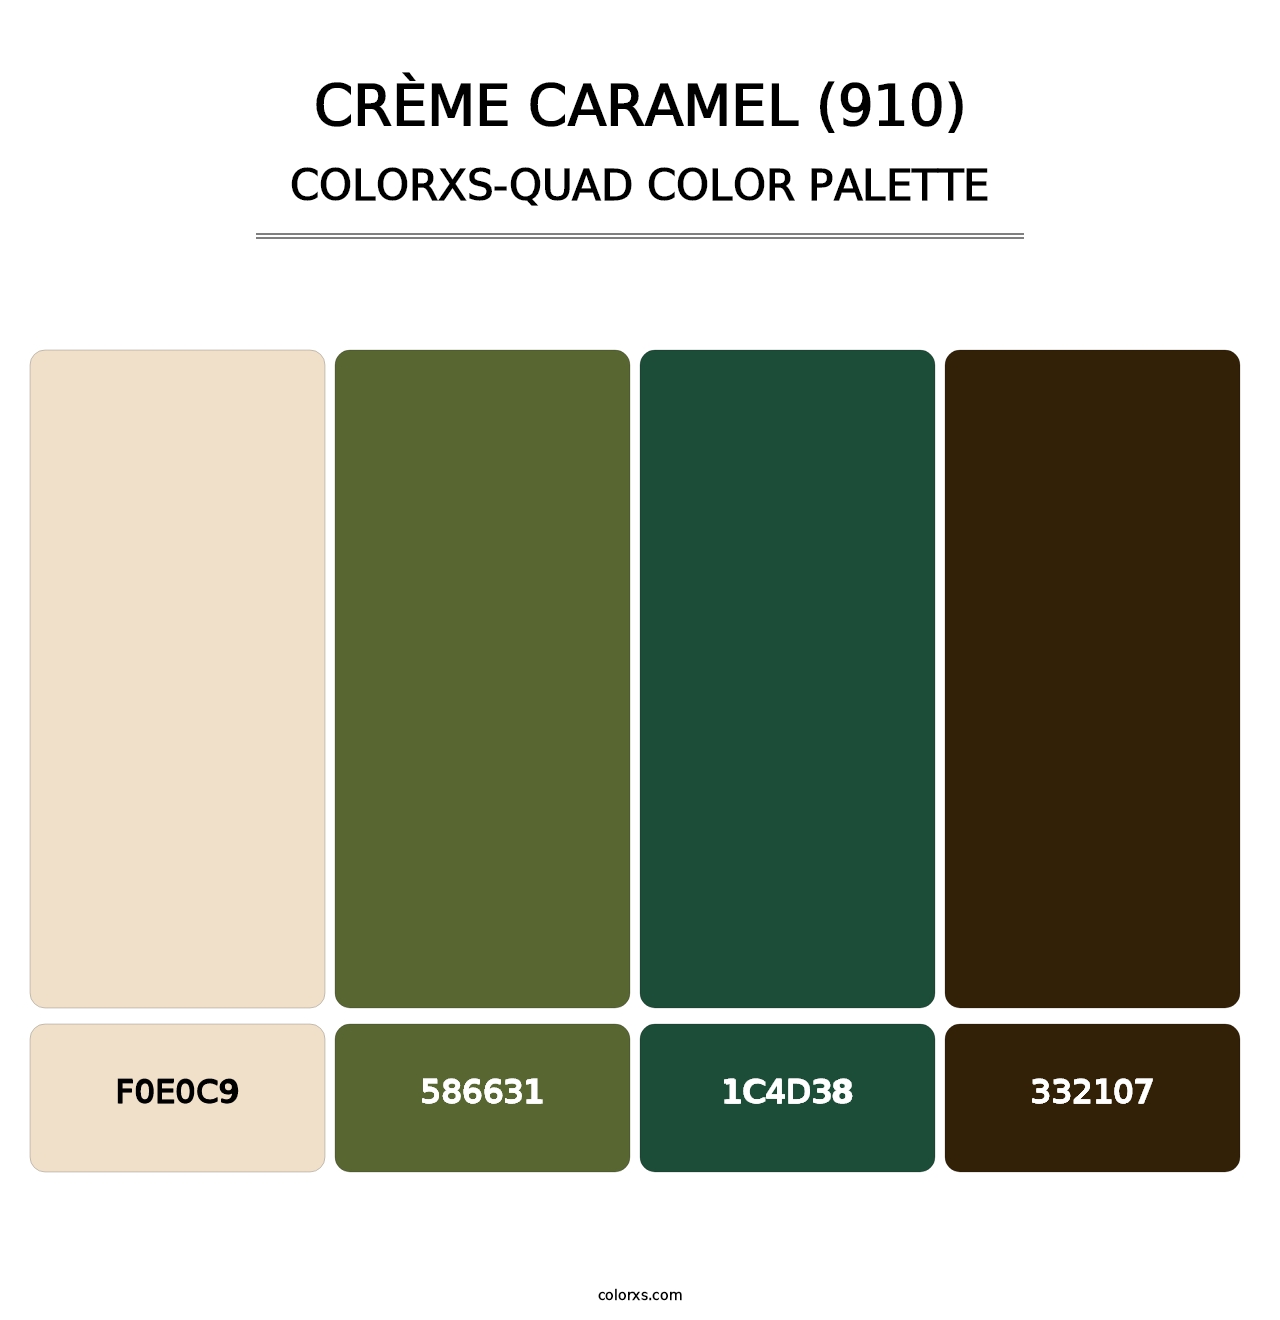 Crème Caramel (910) - Colorxs Quad Palette